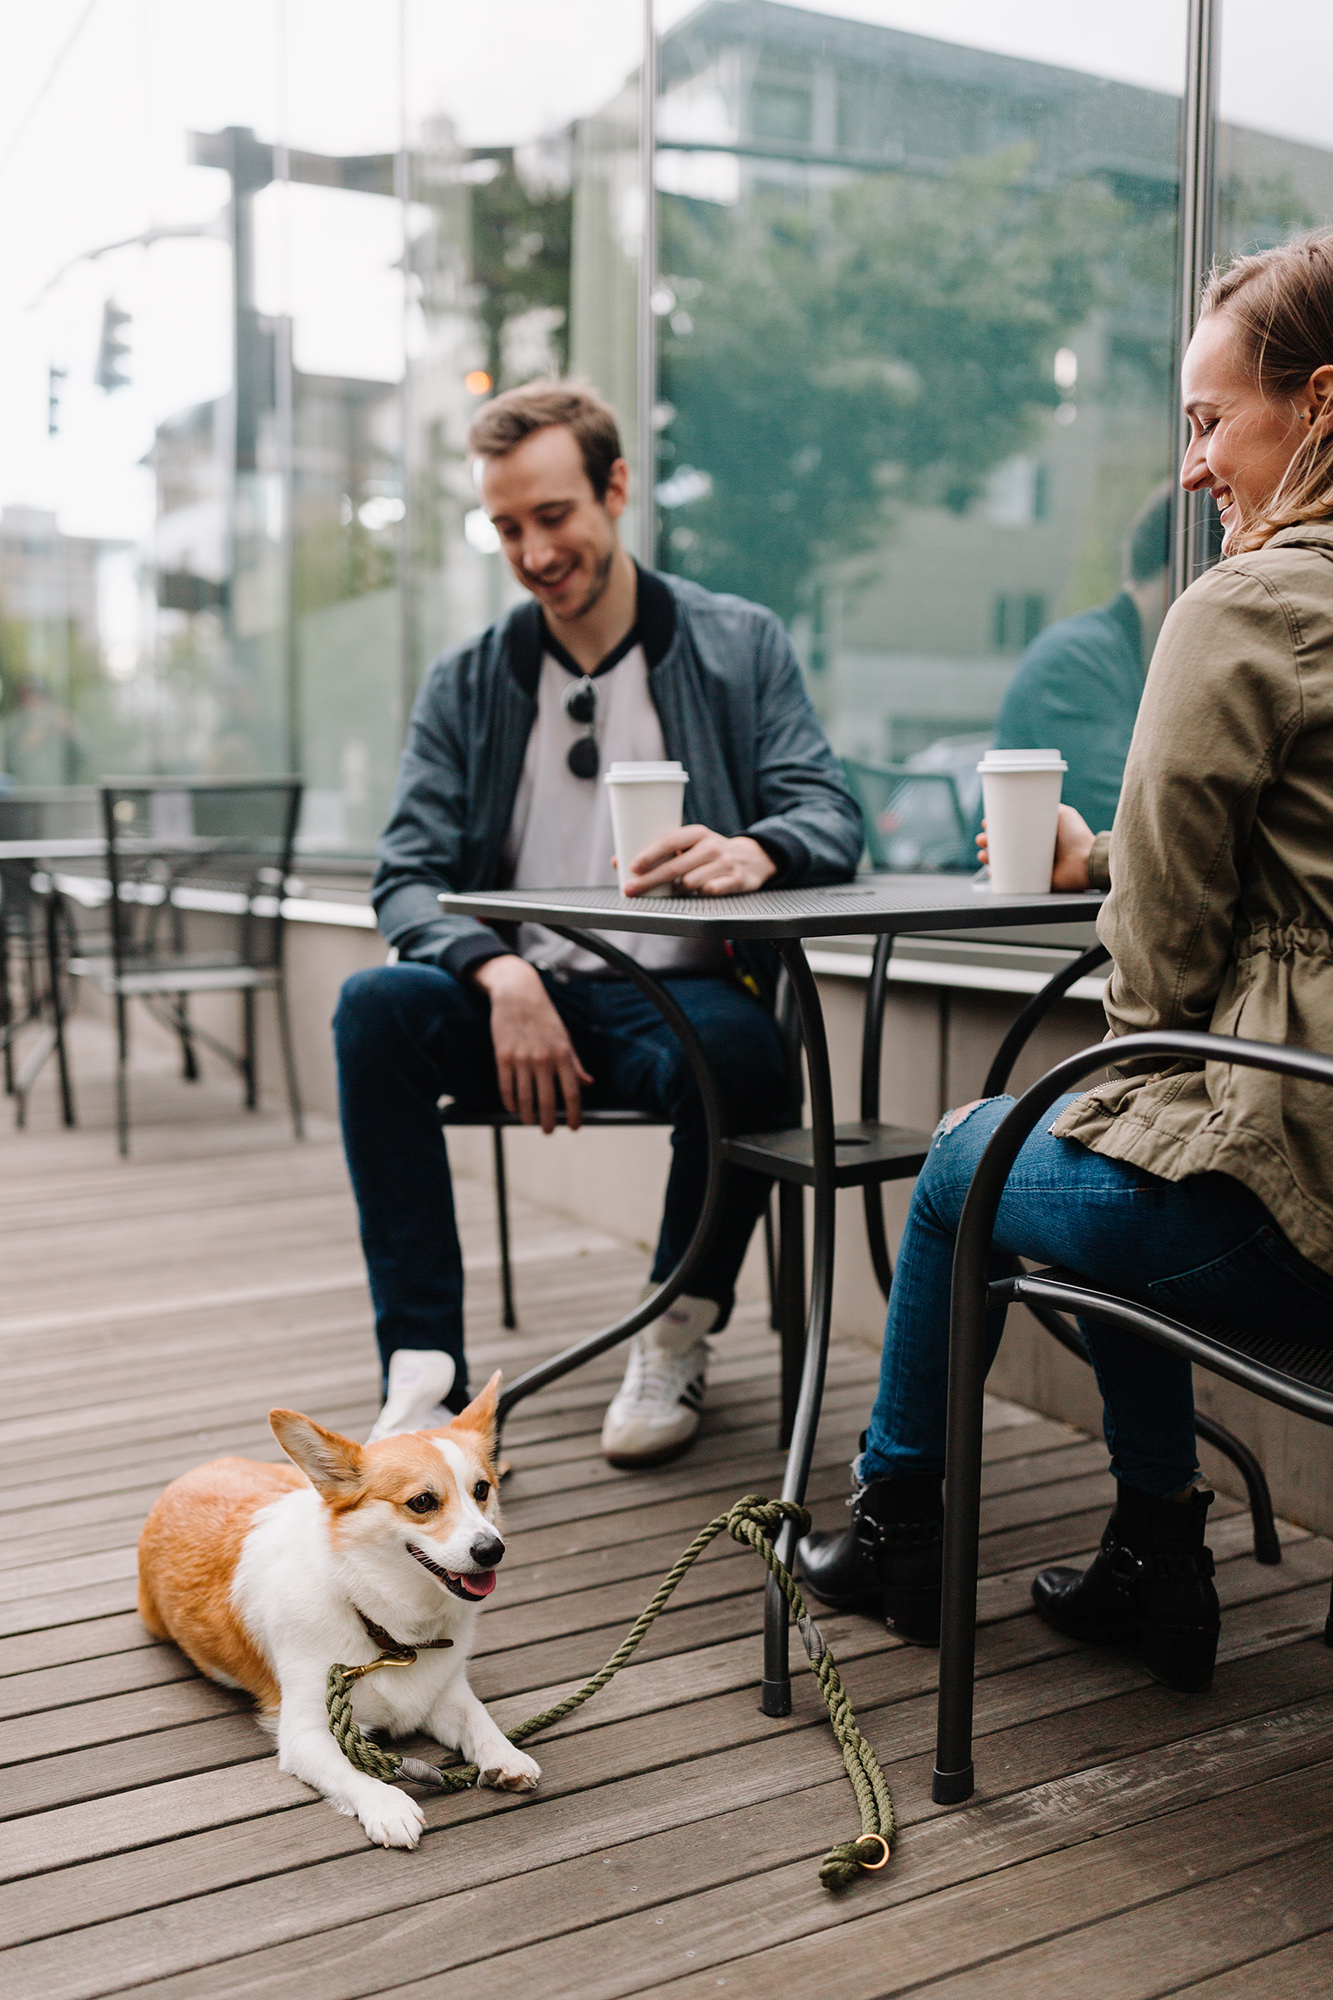 Fontos, hogy kutyád tudjon nyugodtan az asztalod mellett várni, így nem fog másokat zavarni